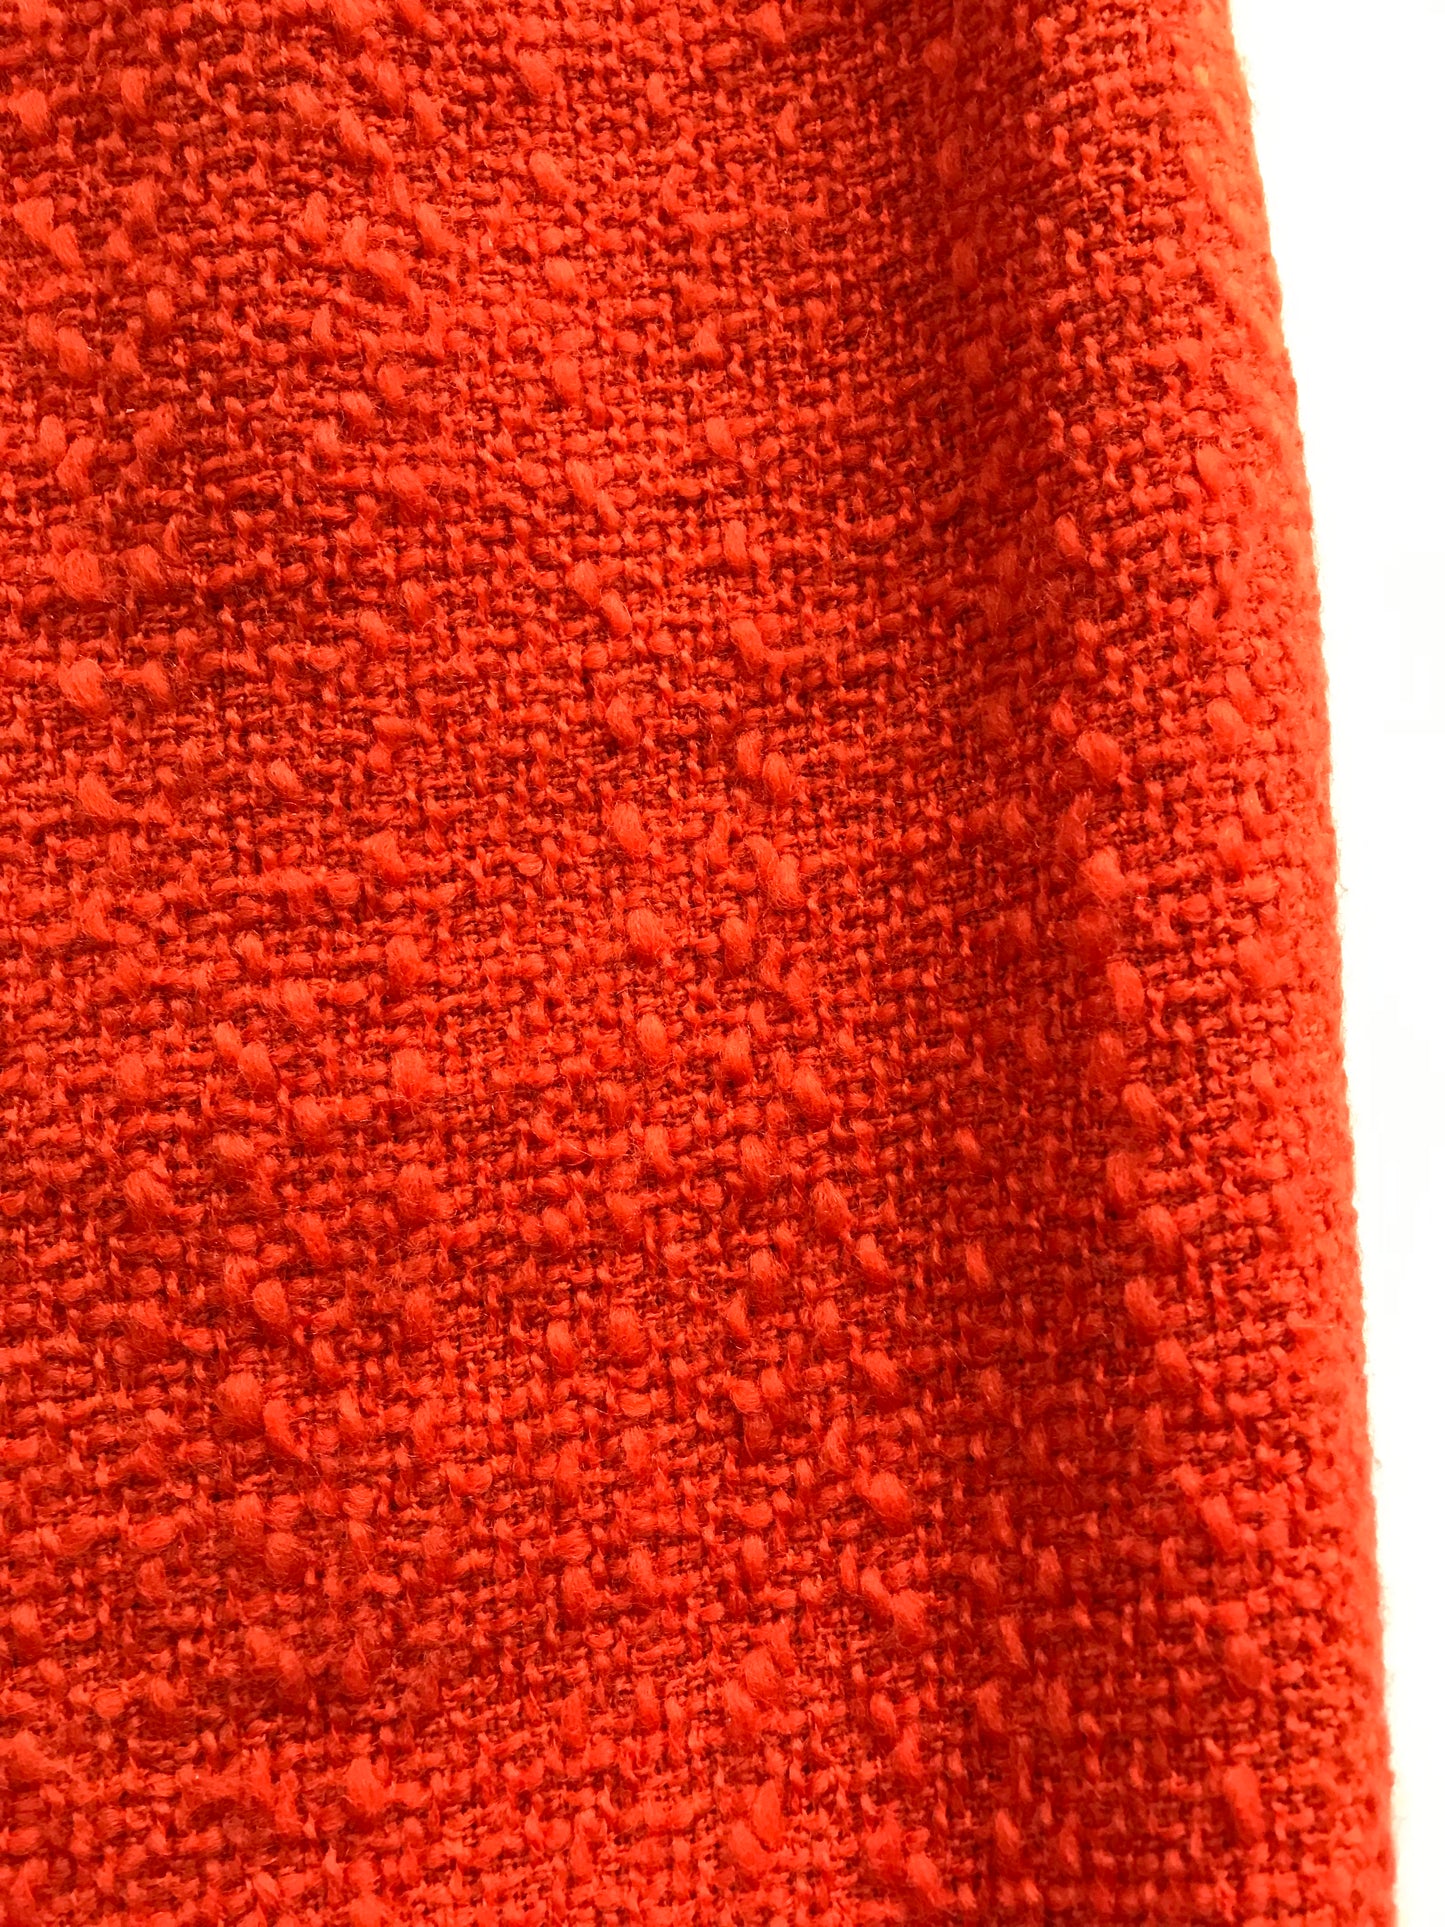 Céline pencil skirt in orange tweed